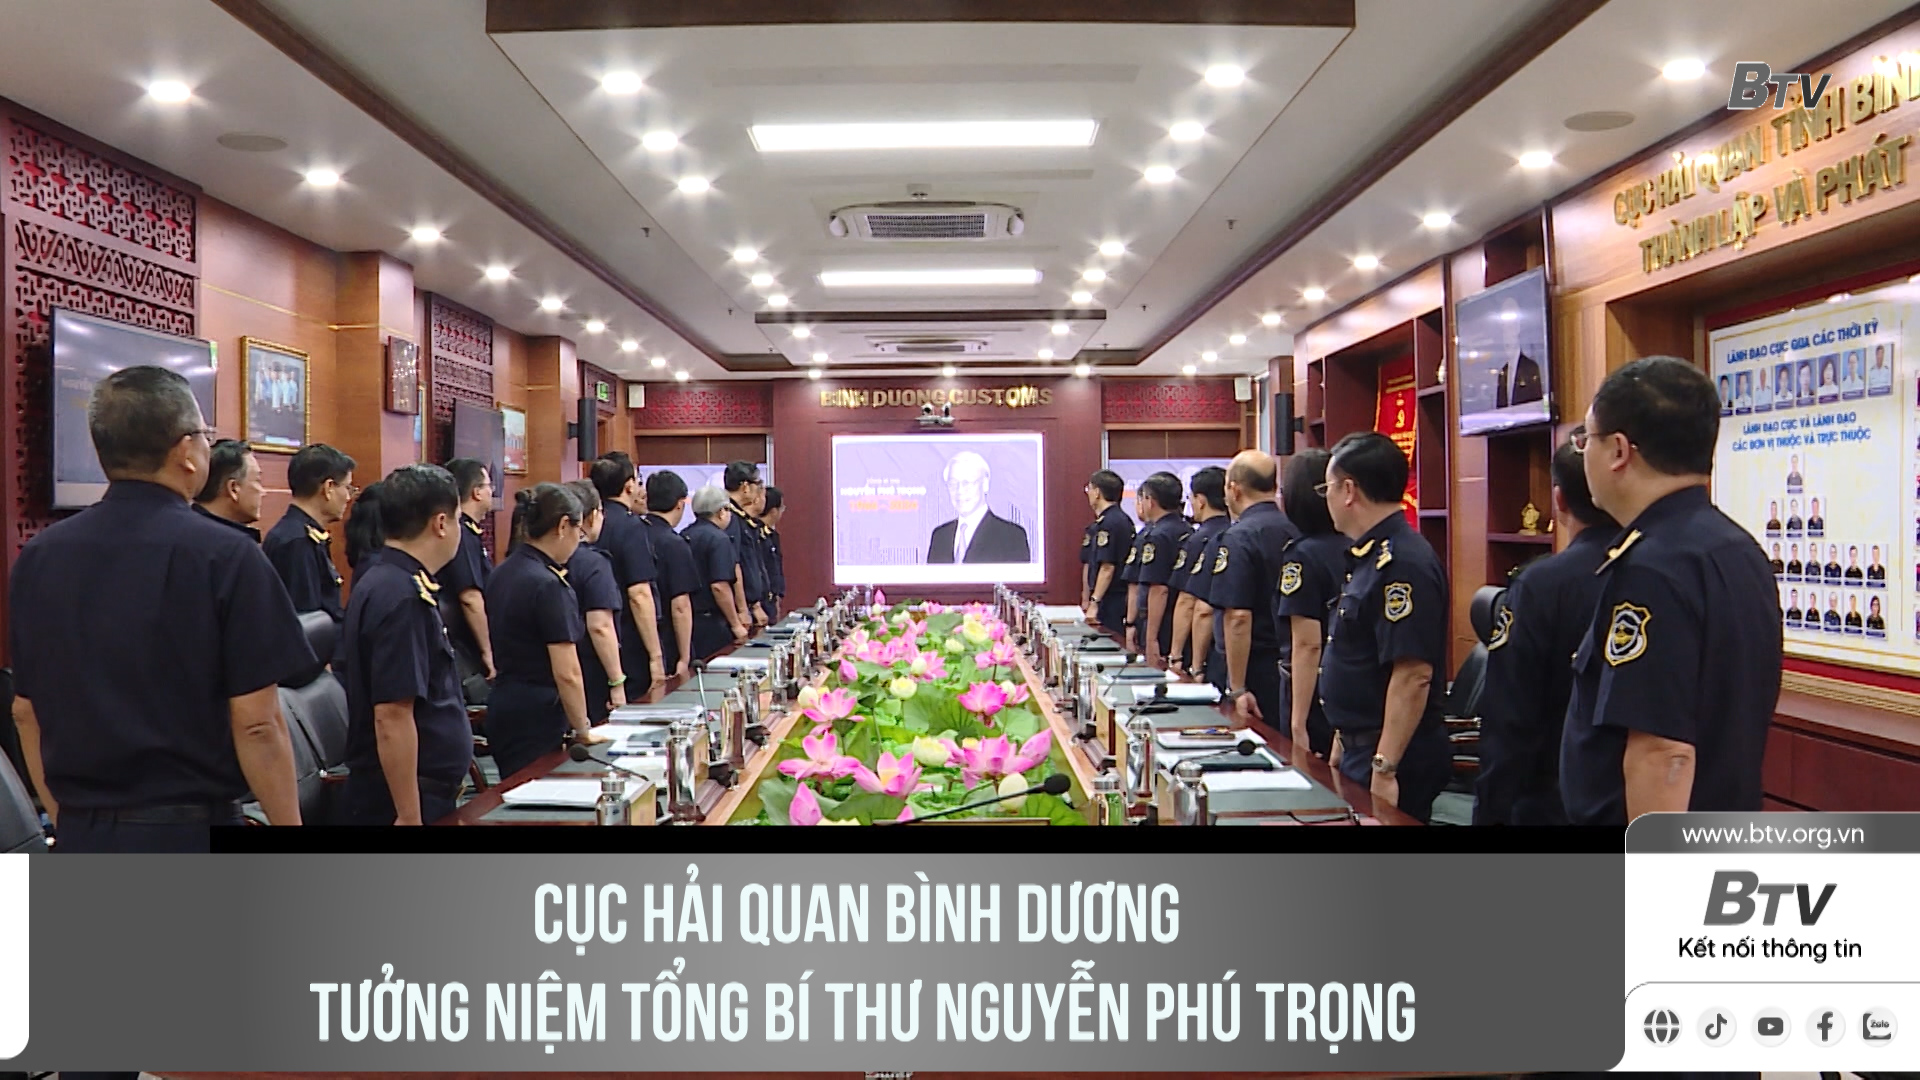 Cục Hải quan Bình Dương mặc niệm Tổng Bí thư Nguyễn Phú Trọng